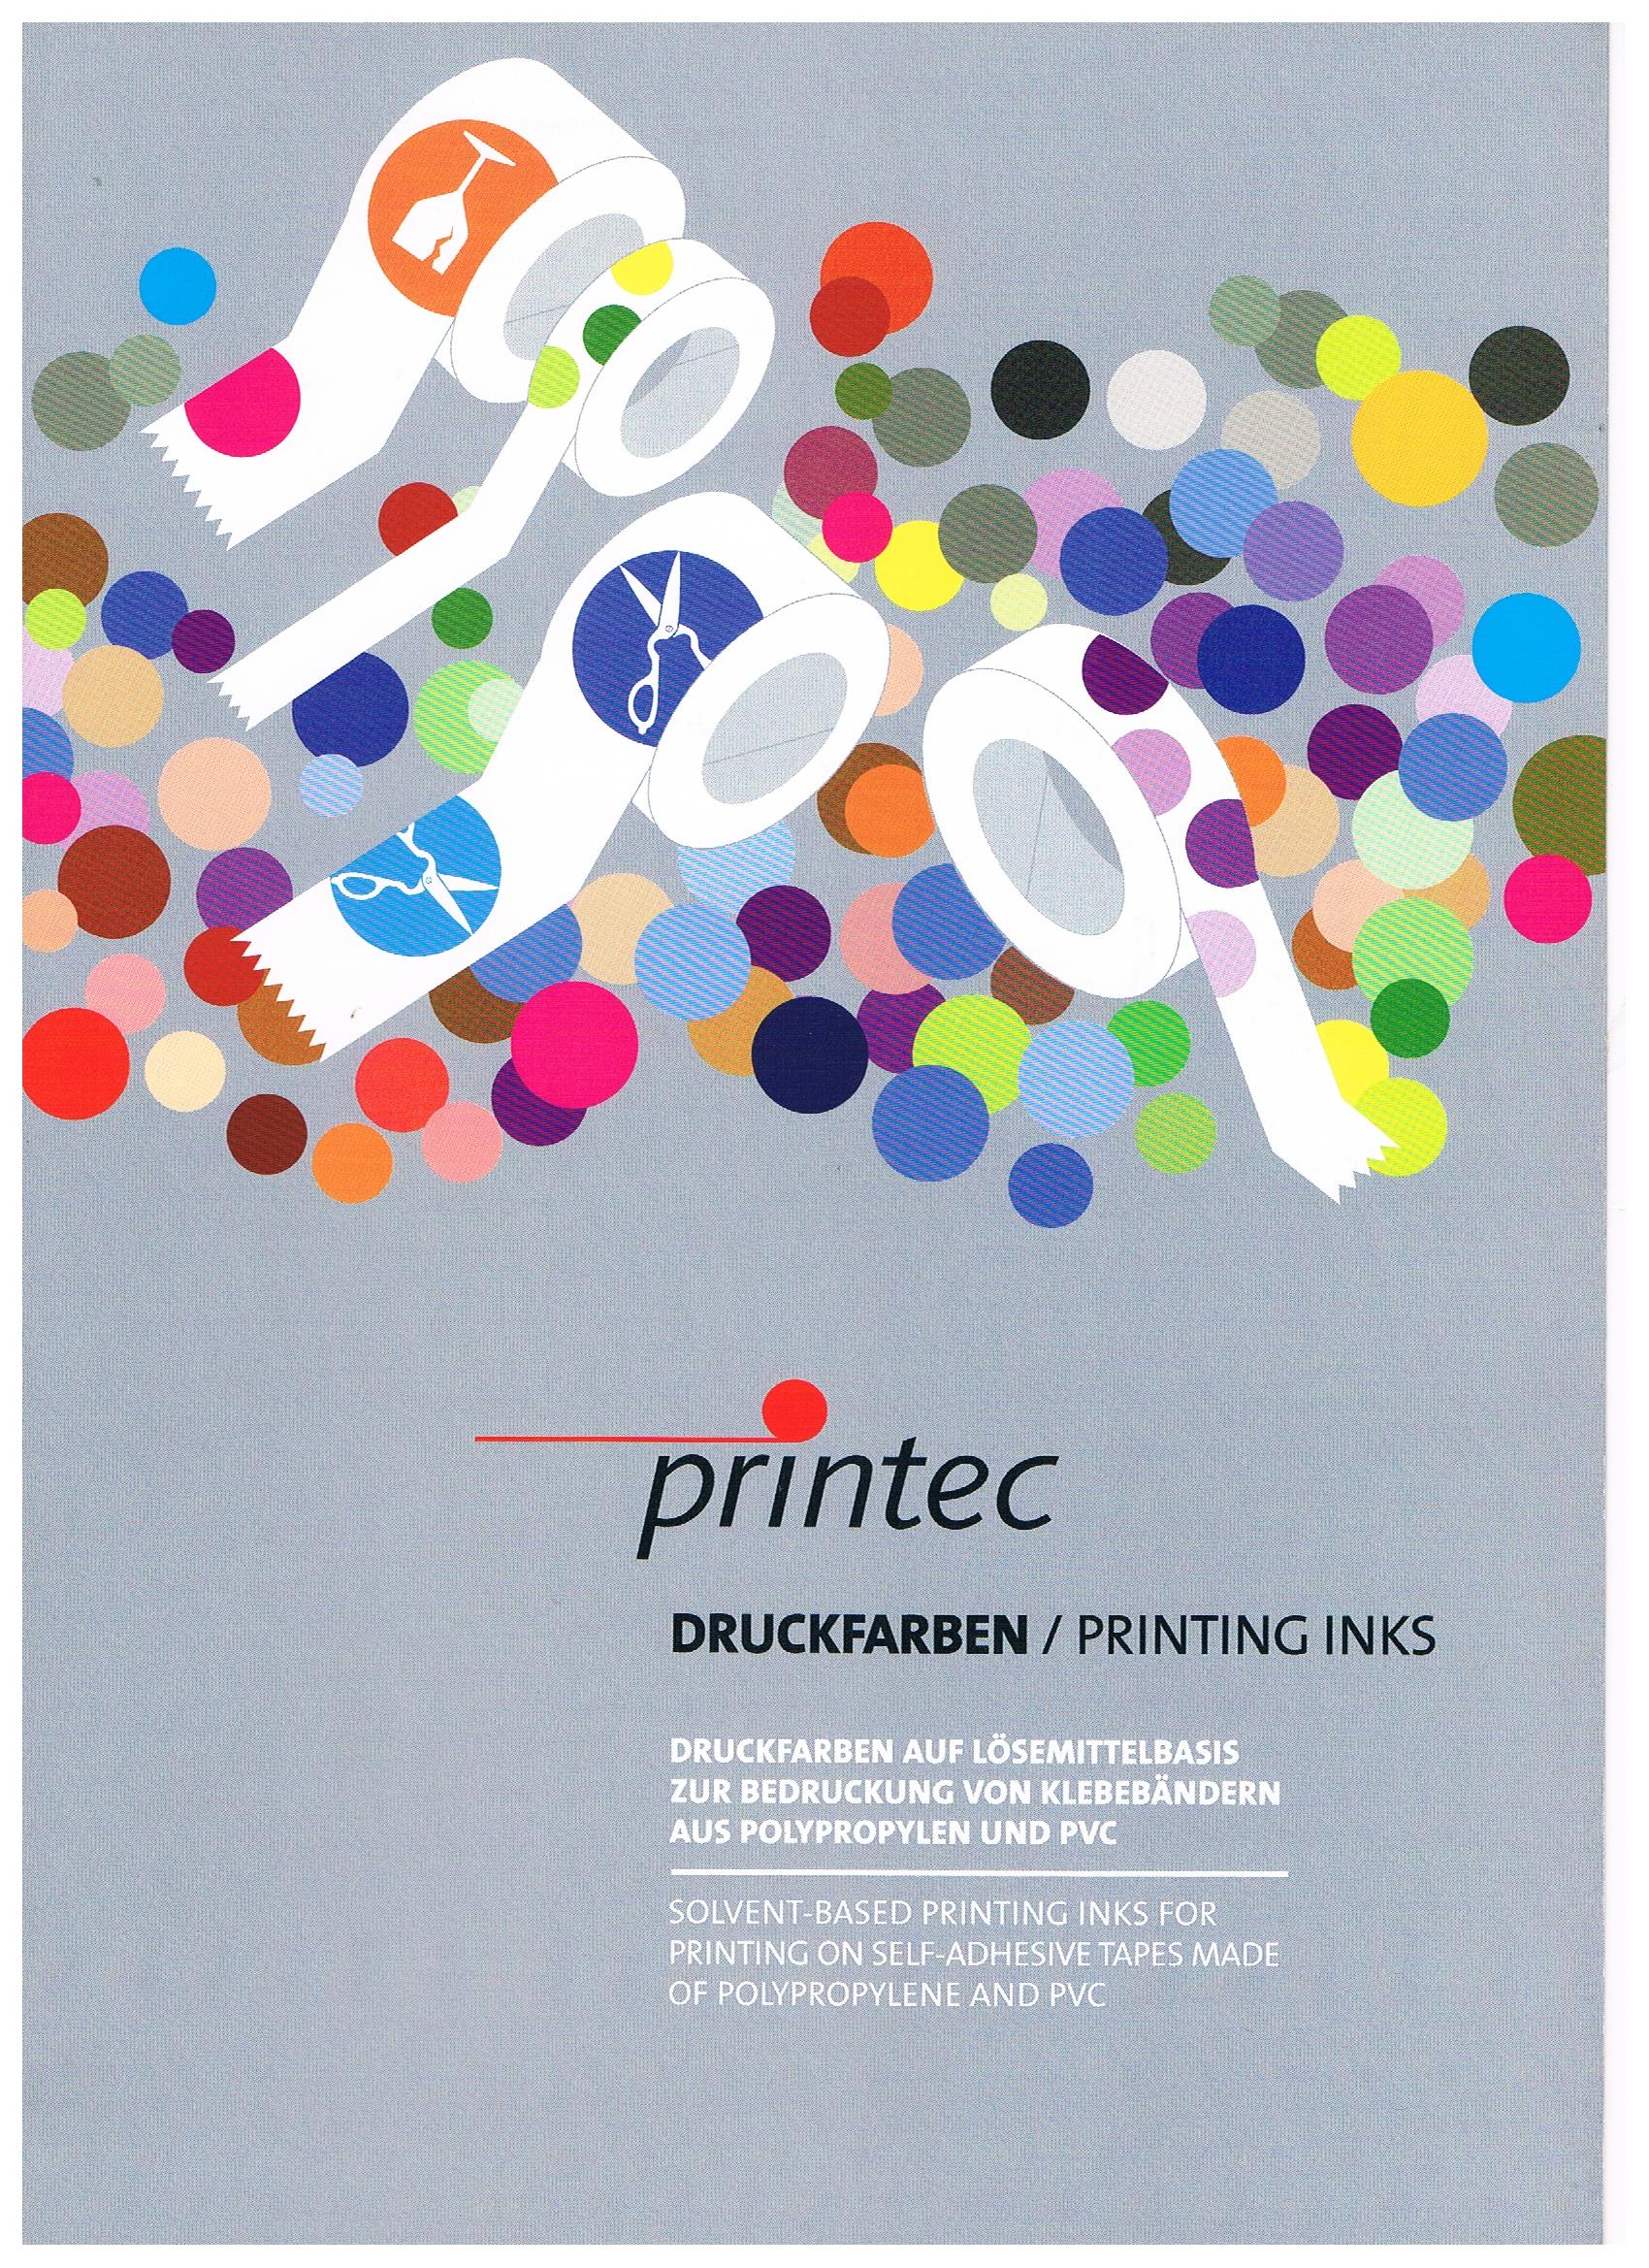 printec inks for adhesive printing tapes